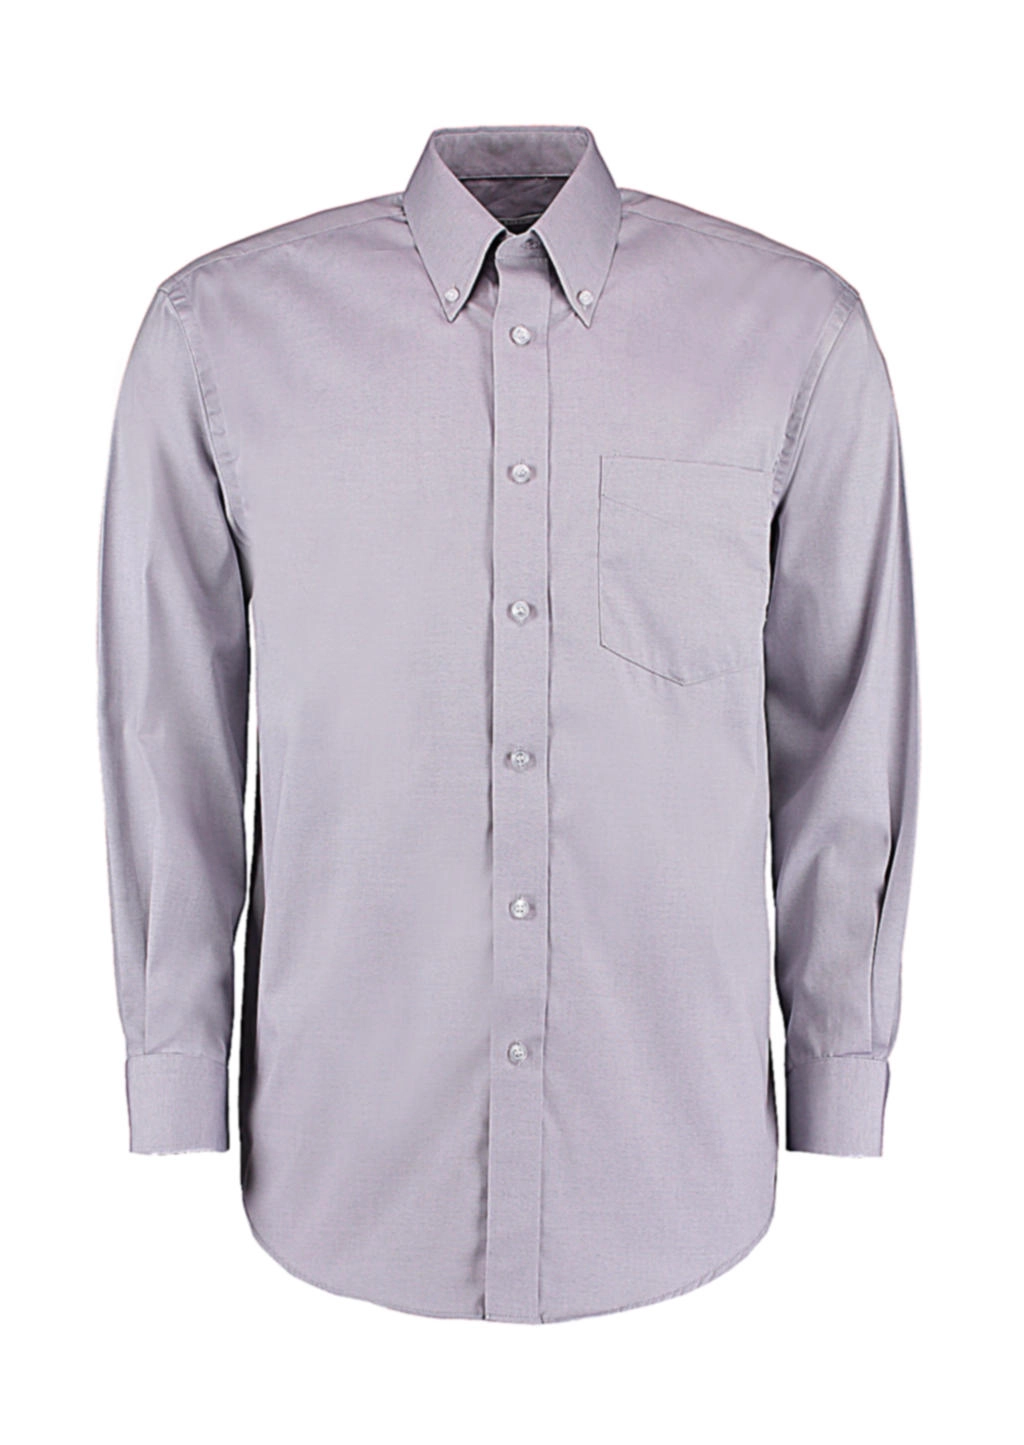 Classic Fit Premium Oxford Shirt zum Besticken und Bedrucken in der Farbe Silver Grey mit Ihren Logo, Schriftzug oder Motiv.